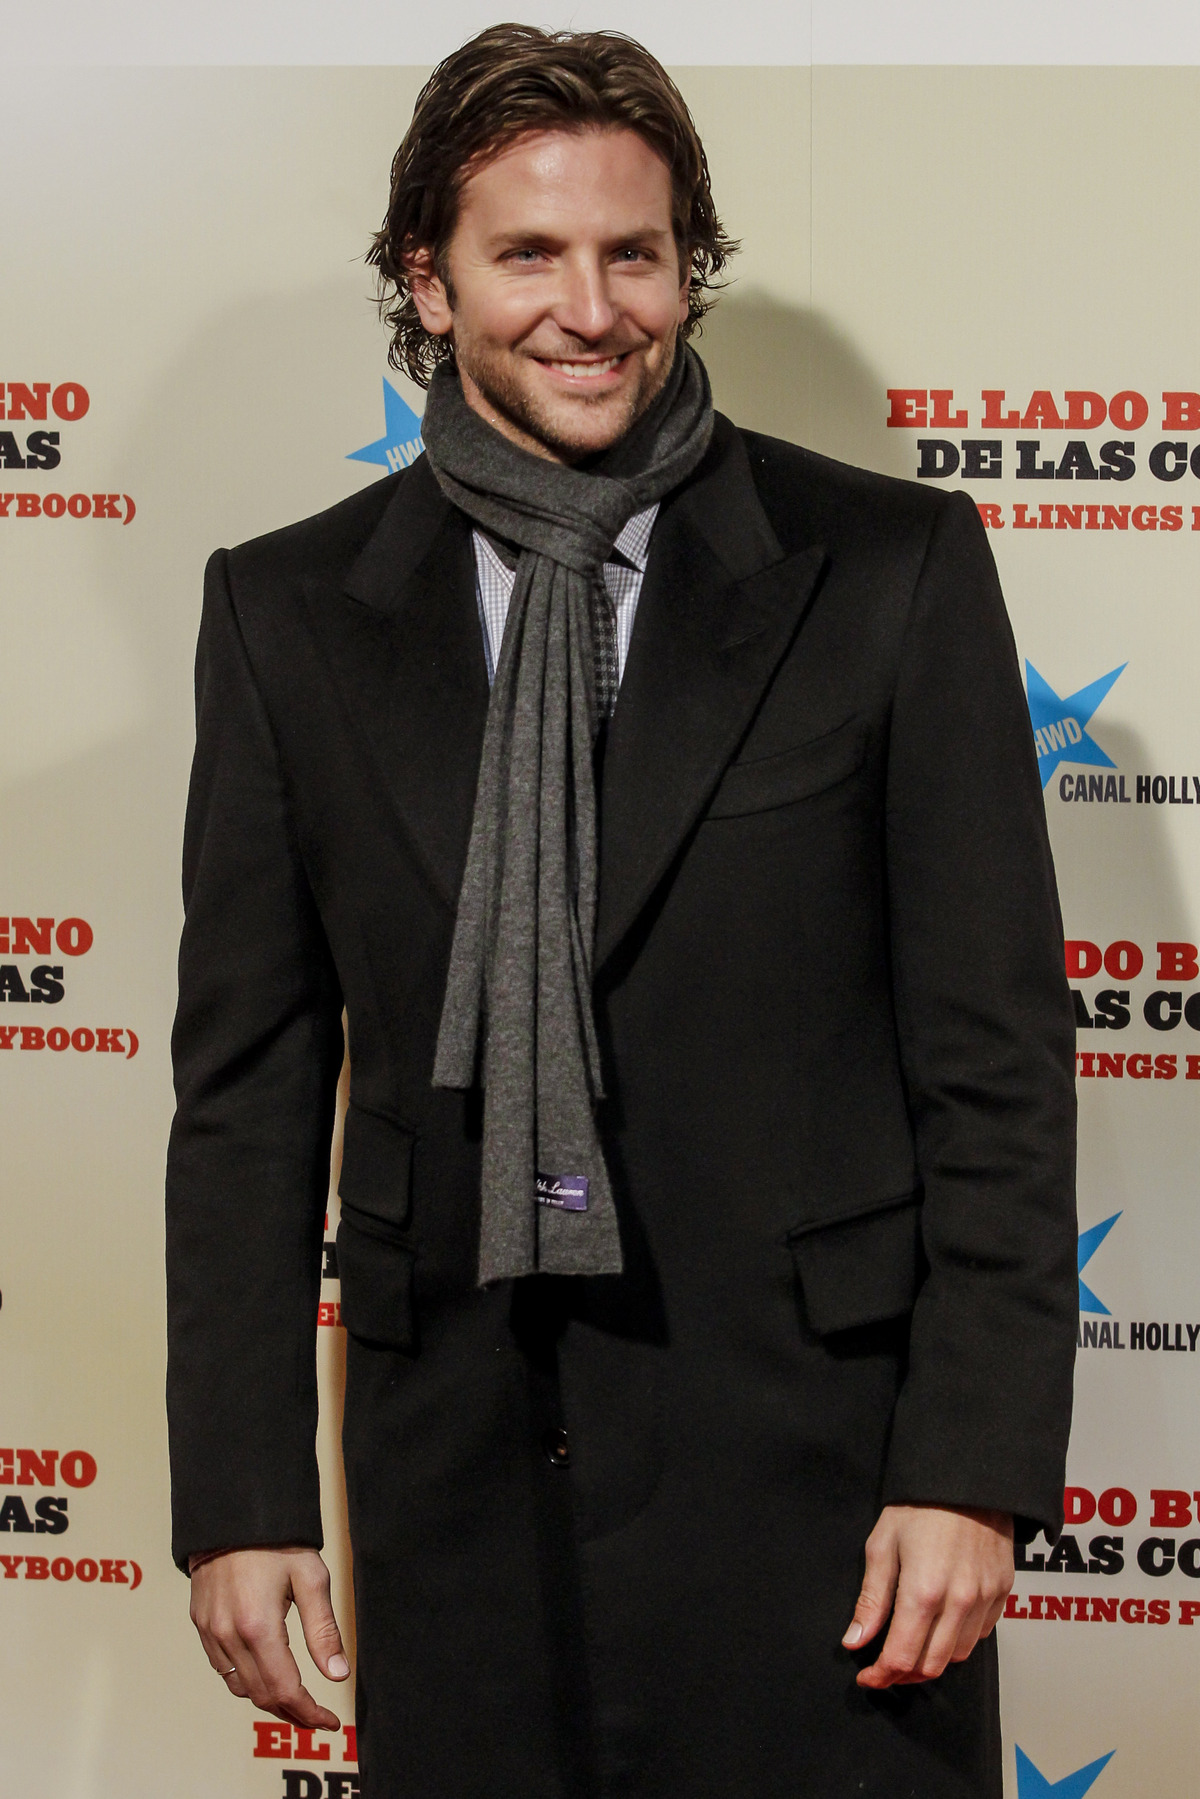 Брэдли Купер на фотоколле и премьере фильма "Мой парень - псих" в Мадриде